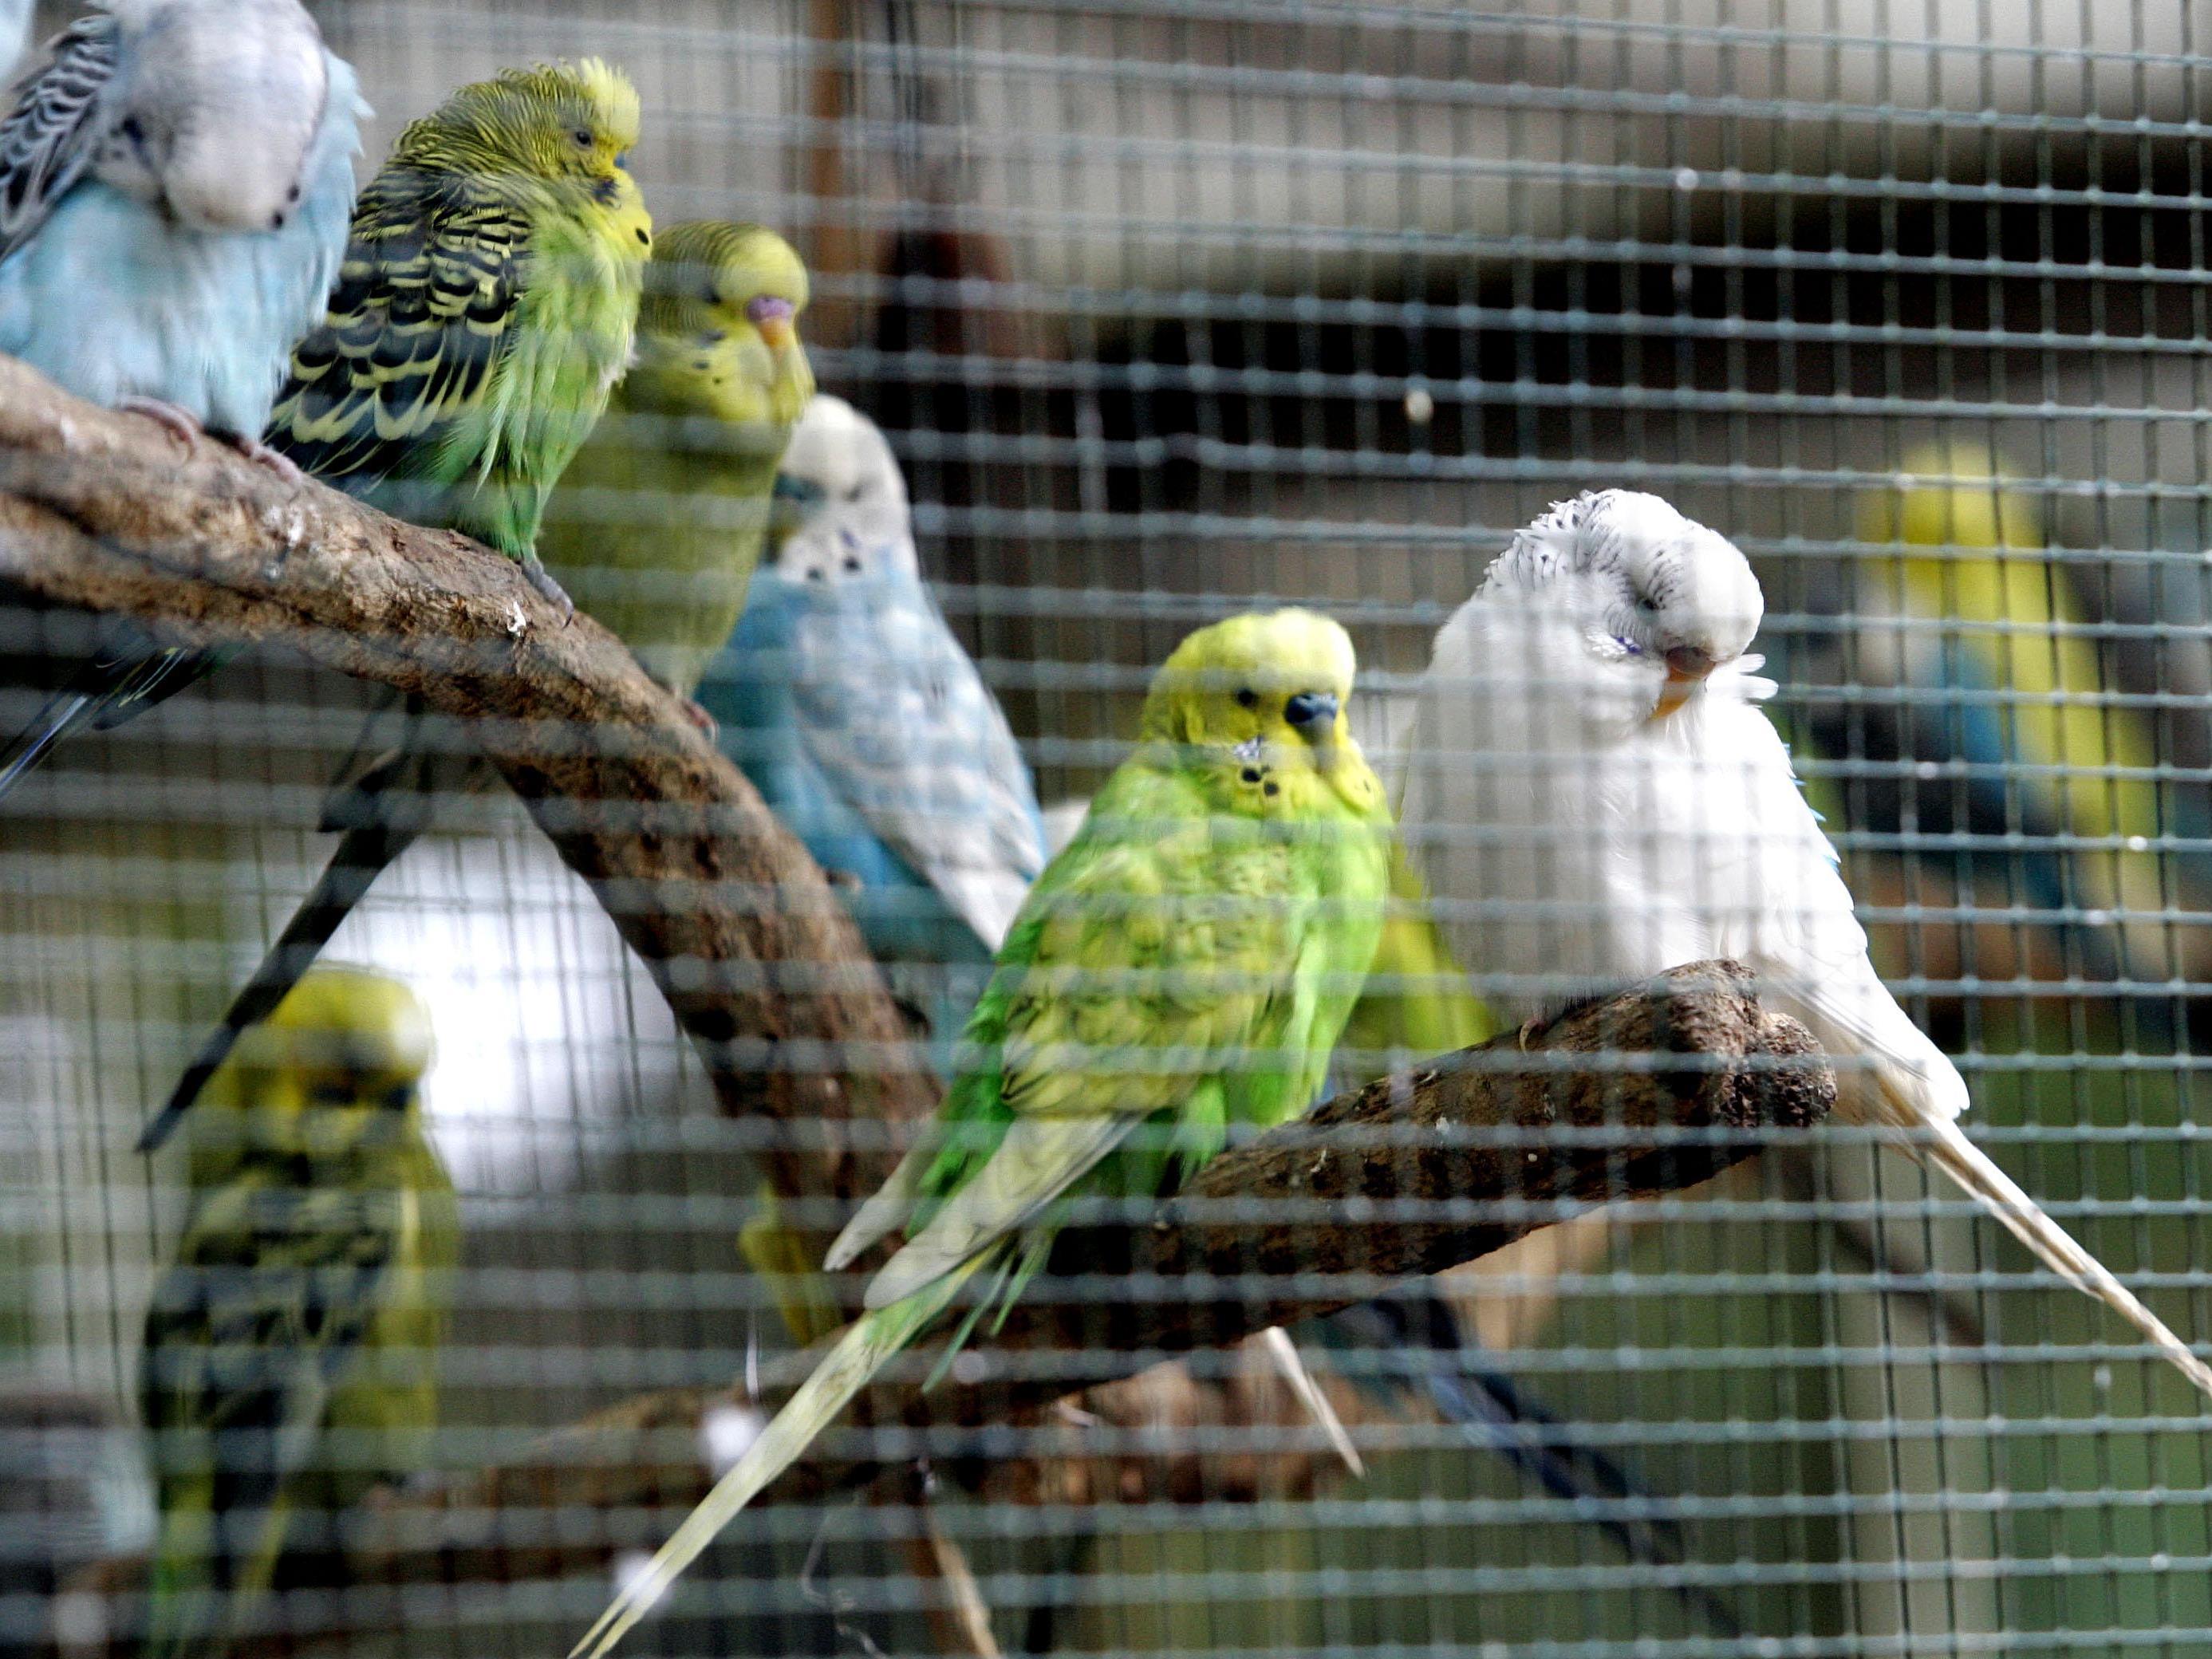 Am Montag wurden 165 Ziervögel aus einem Verschlag in Wien-Liesing befreit.